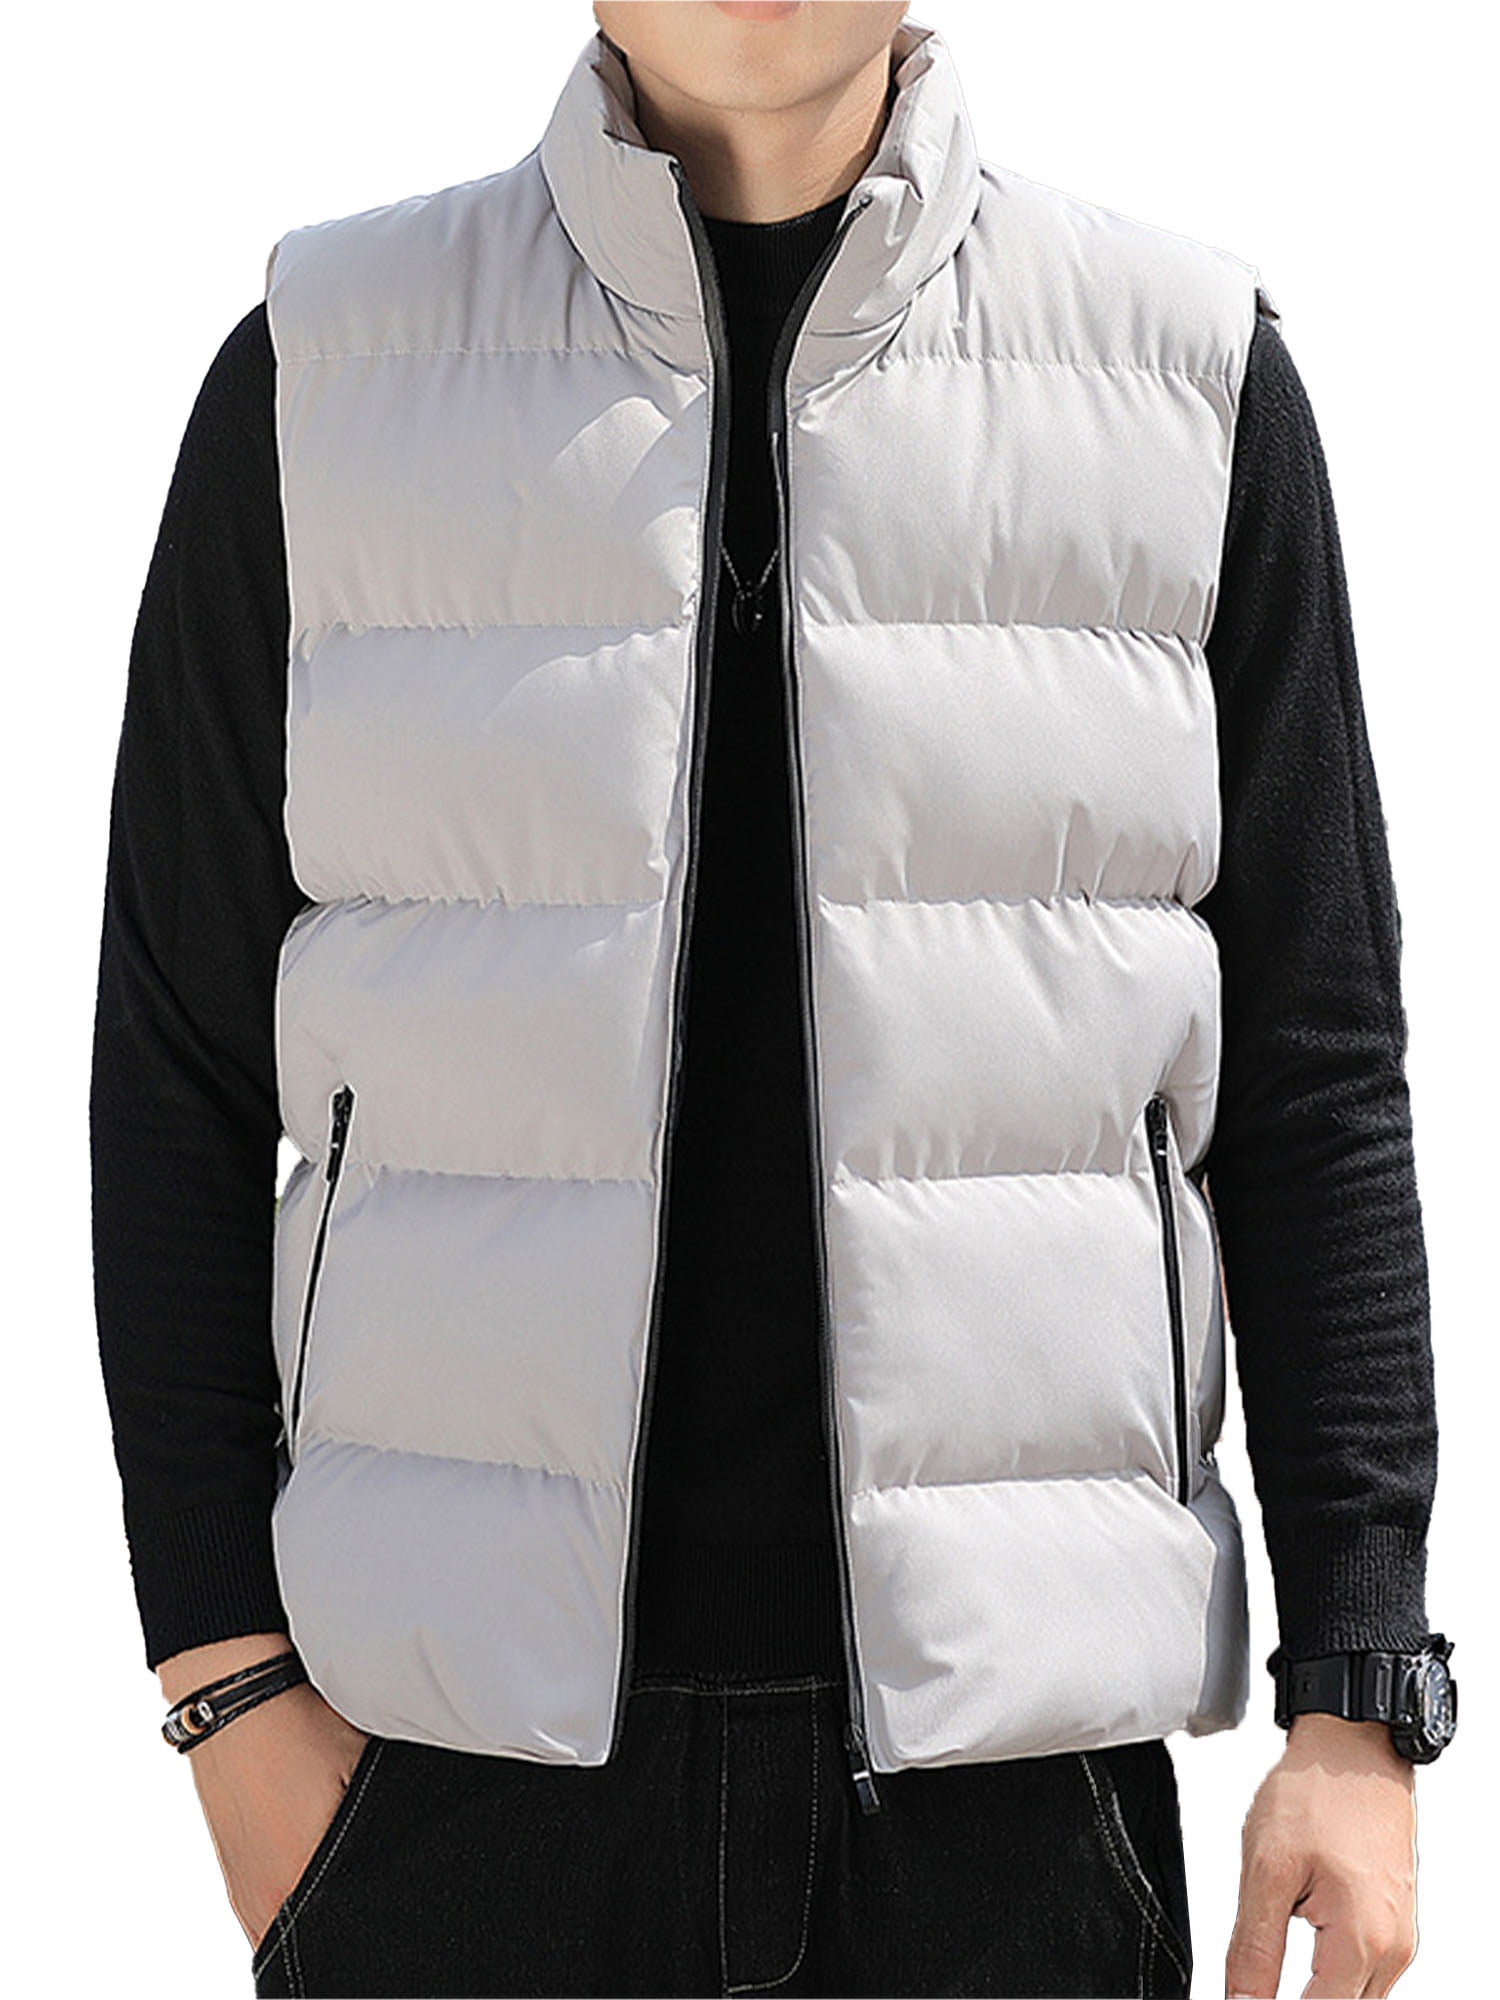 Men's Winter Warm Fleece Vest Casual Sleeveless Jacket Waistcoat Outwear Tops 